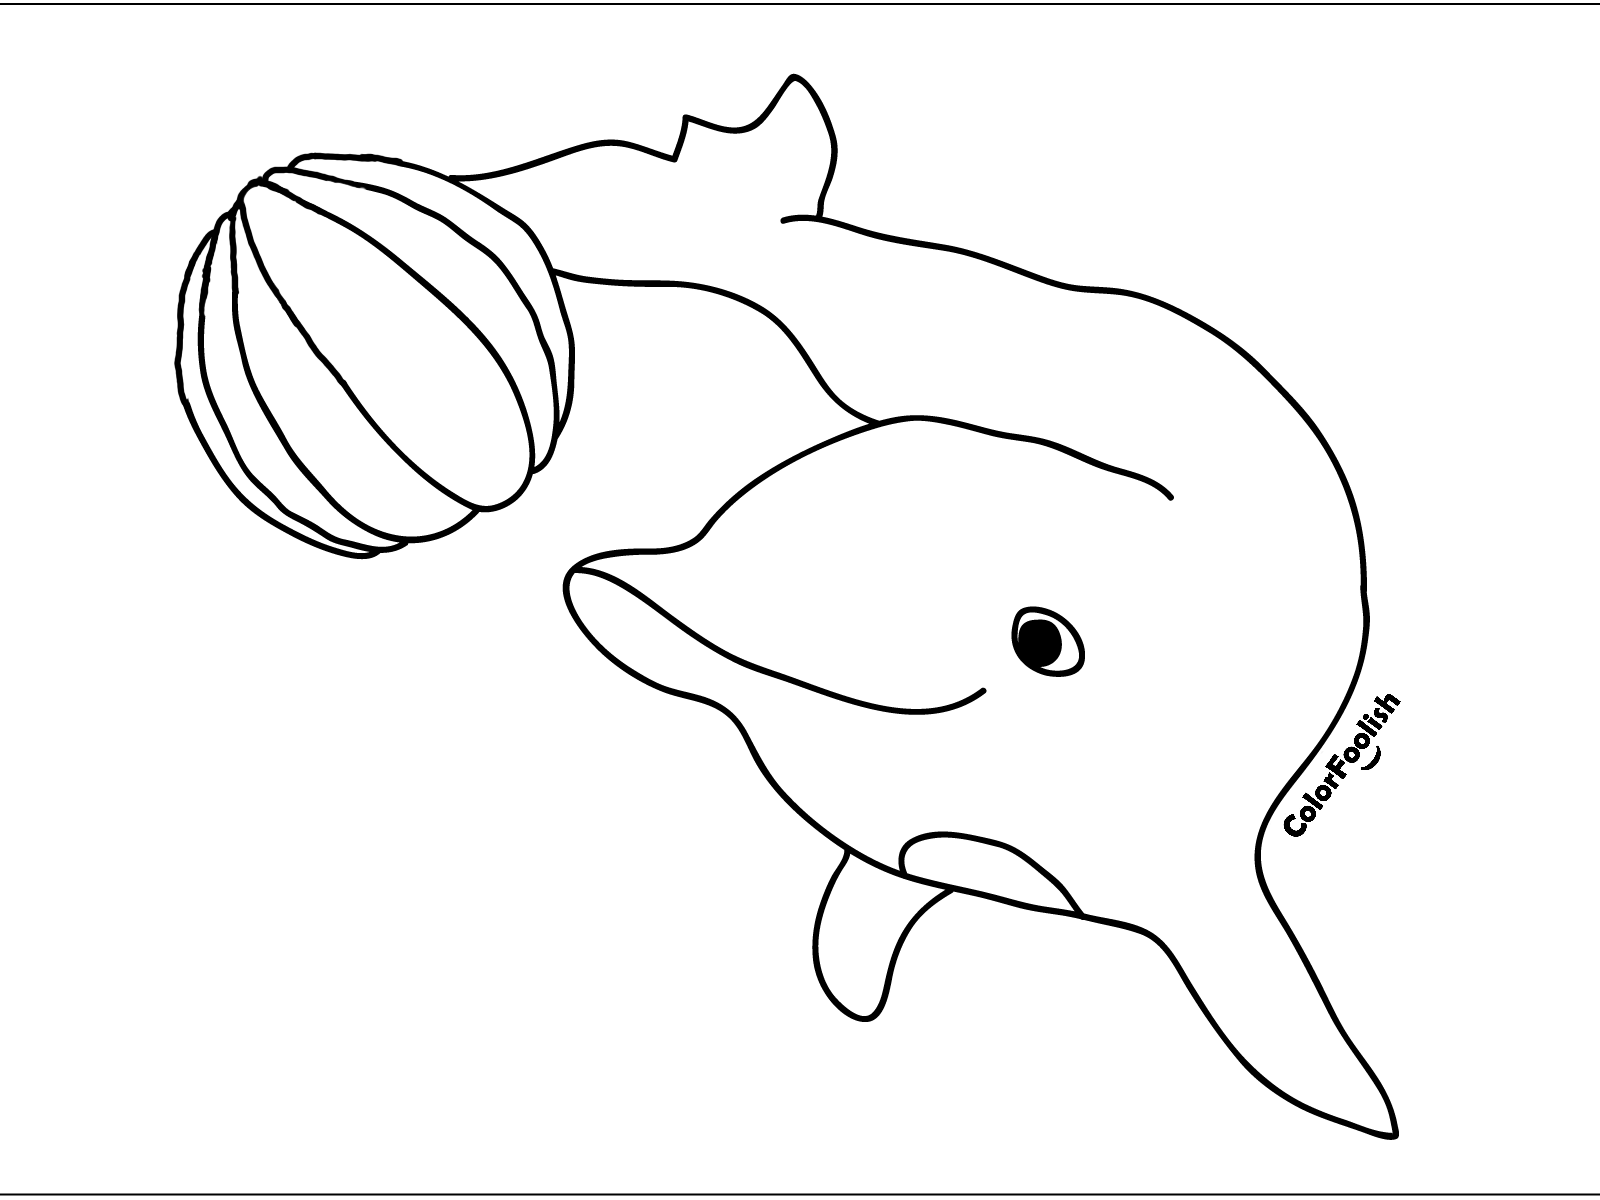 Dibujo para colorear de un delfín jugando con una pelota